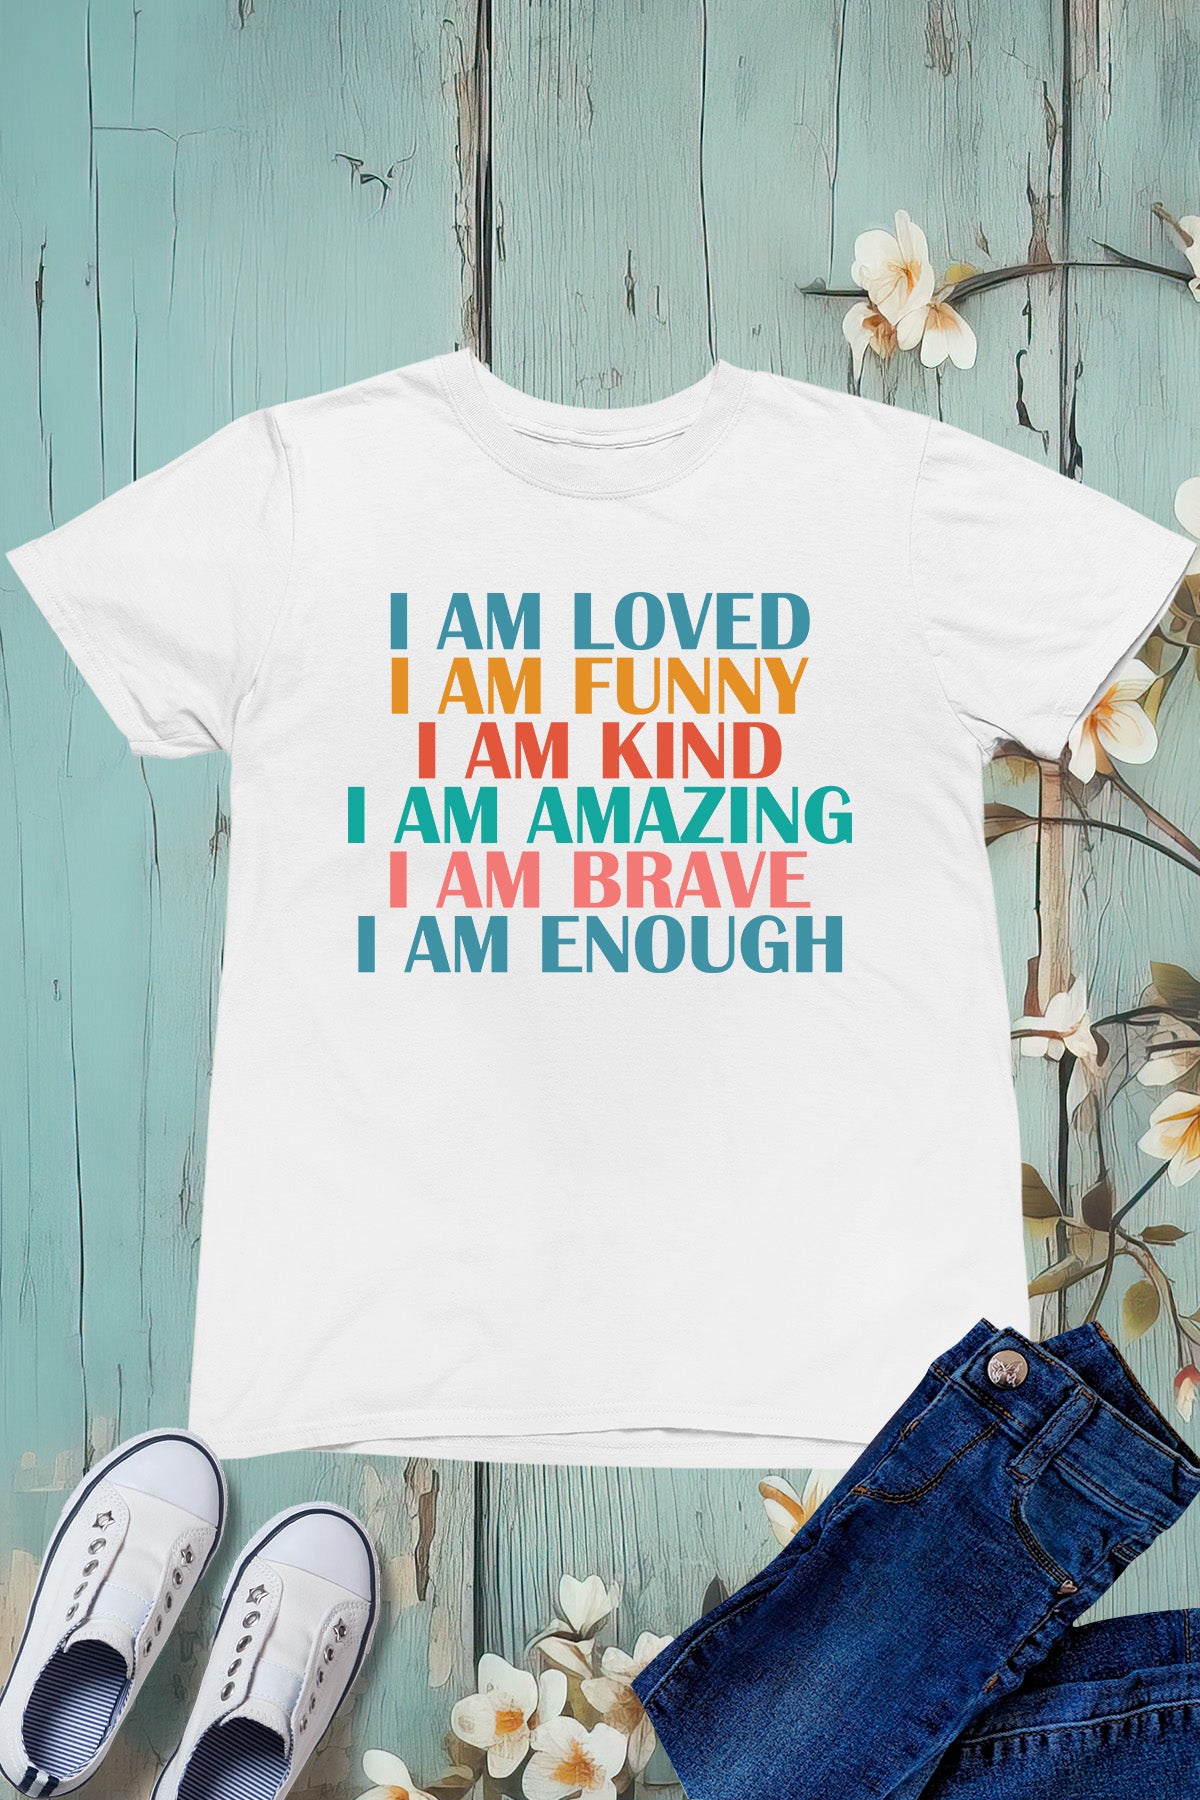 I am Loved Funny Kind Amazing Brave Enough Kids Shirt